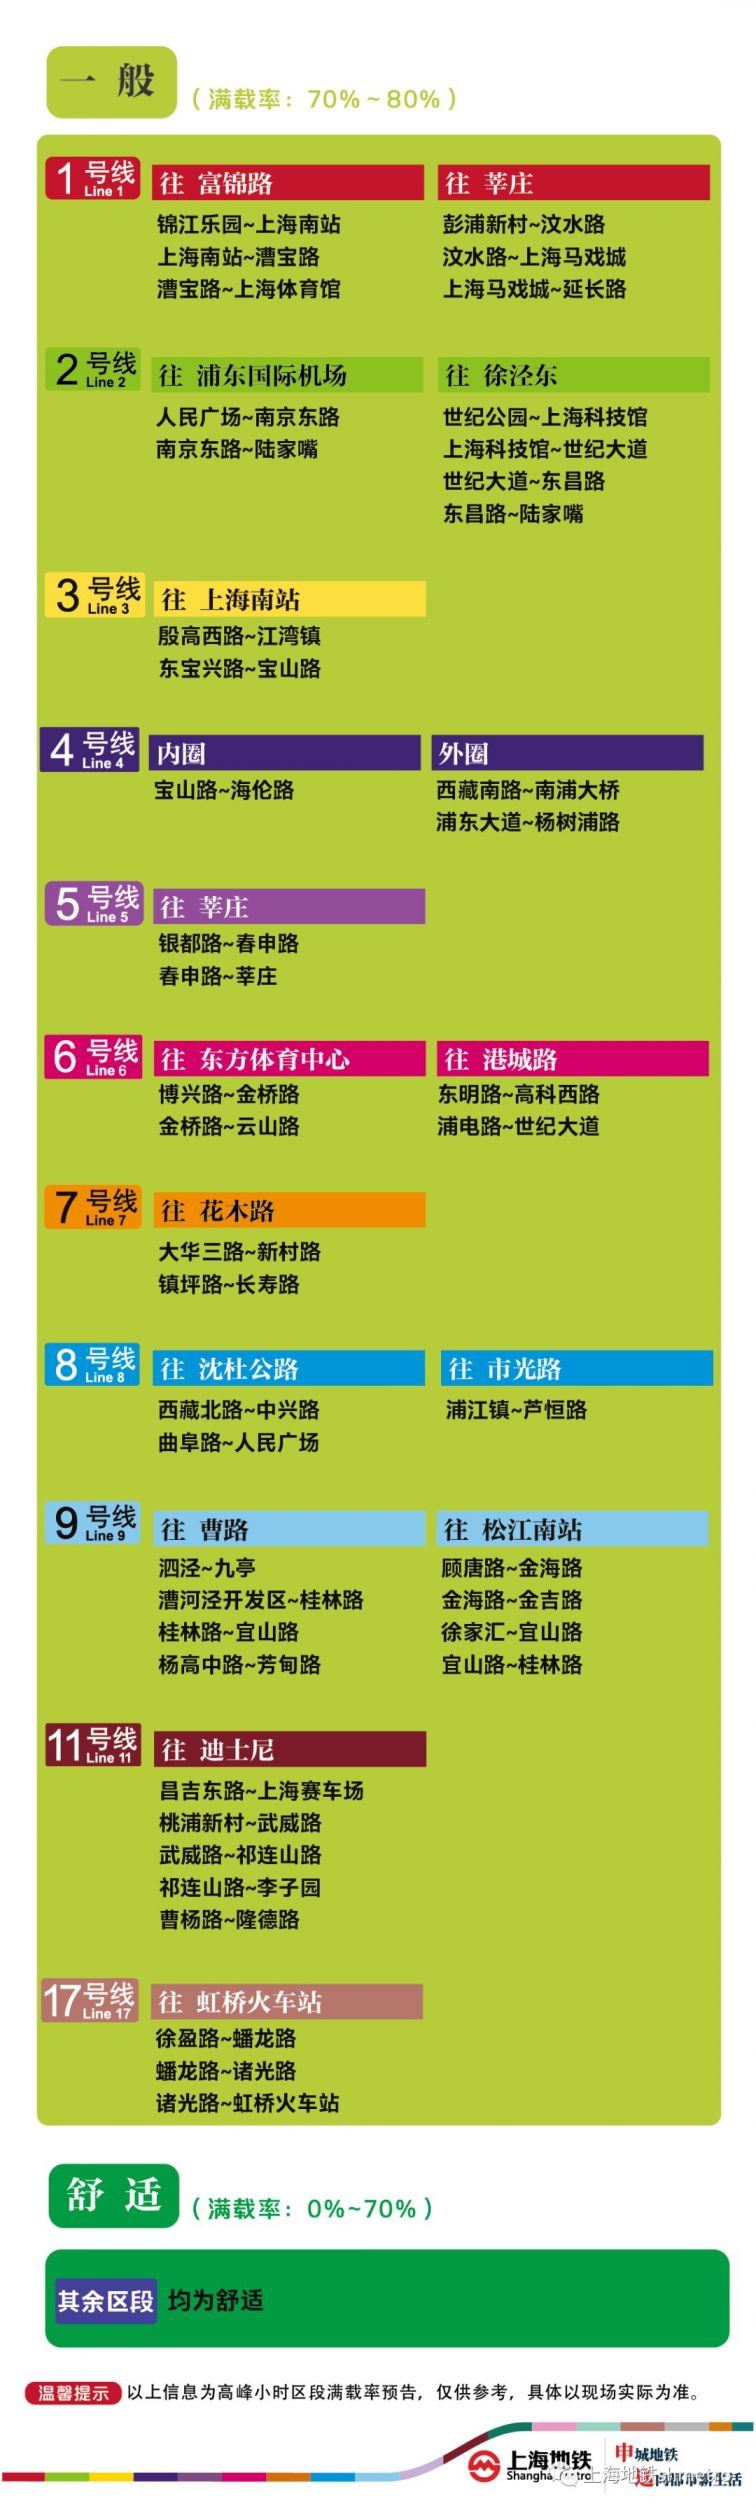 10月15日上海8座地铁站早高峰限流(附舒适度)